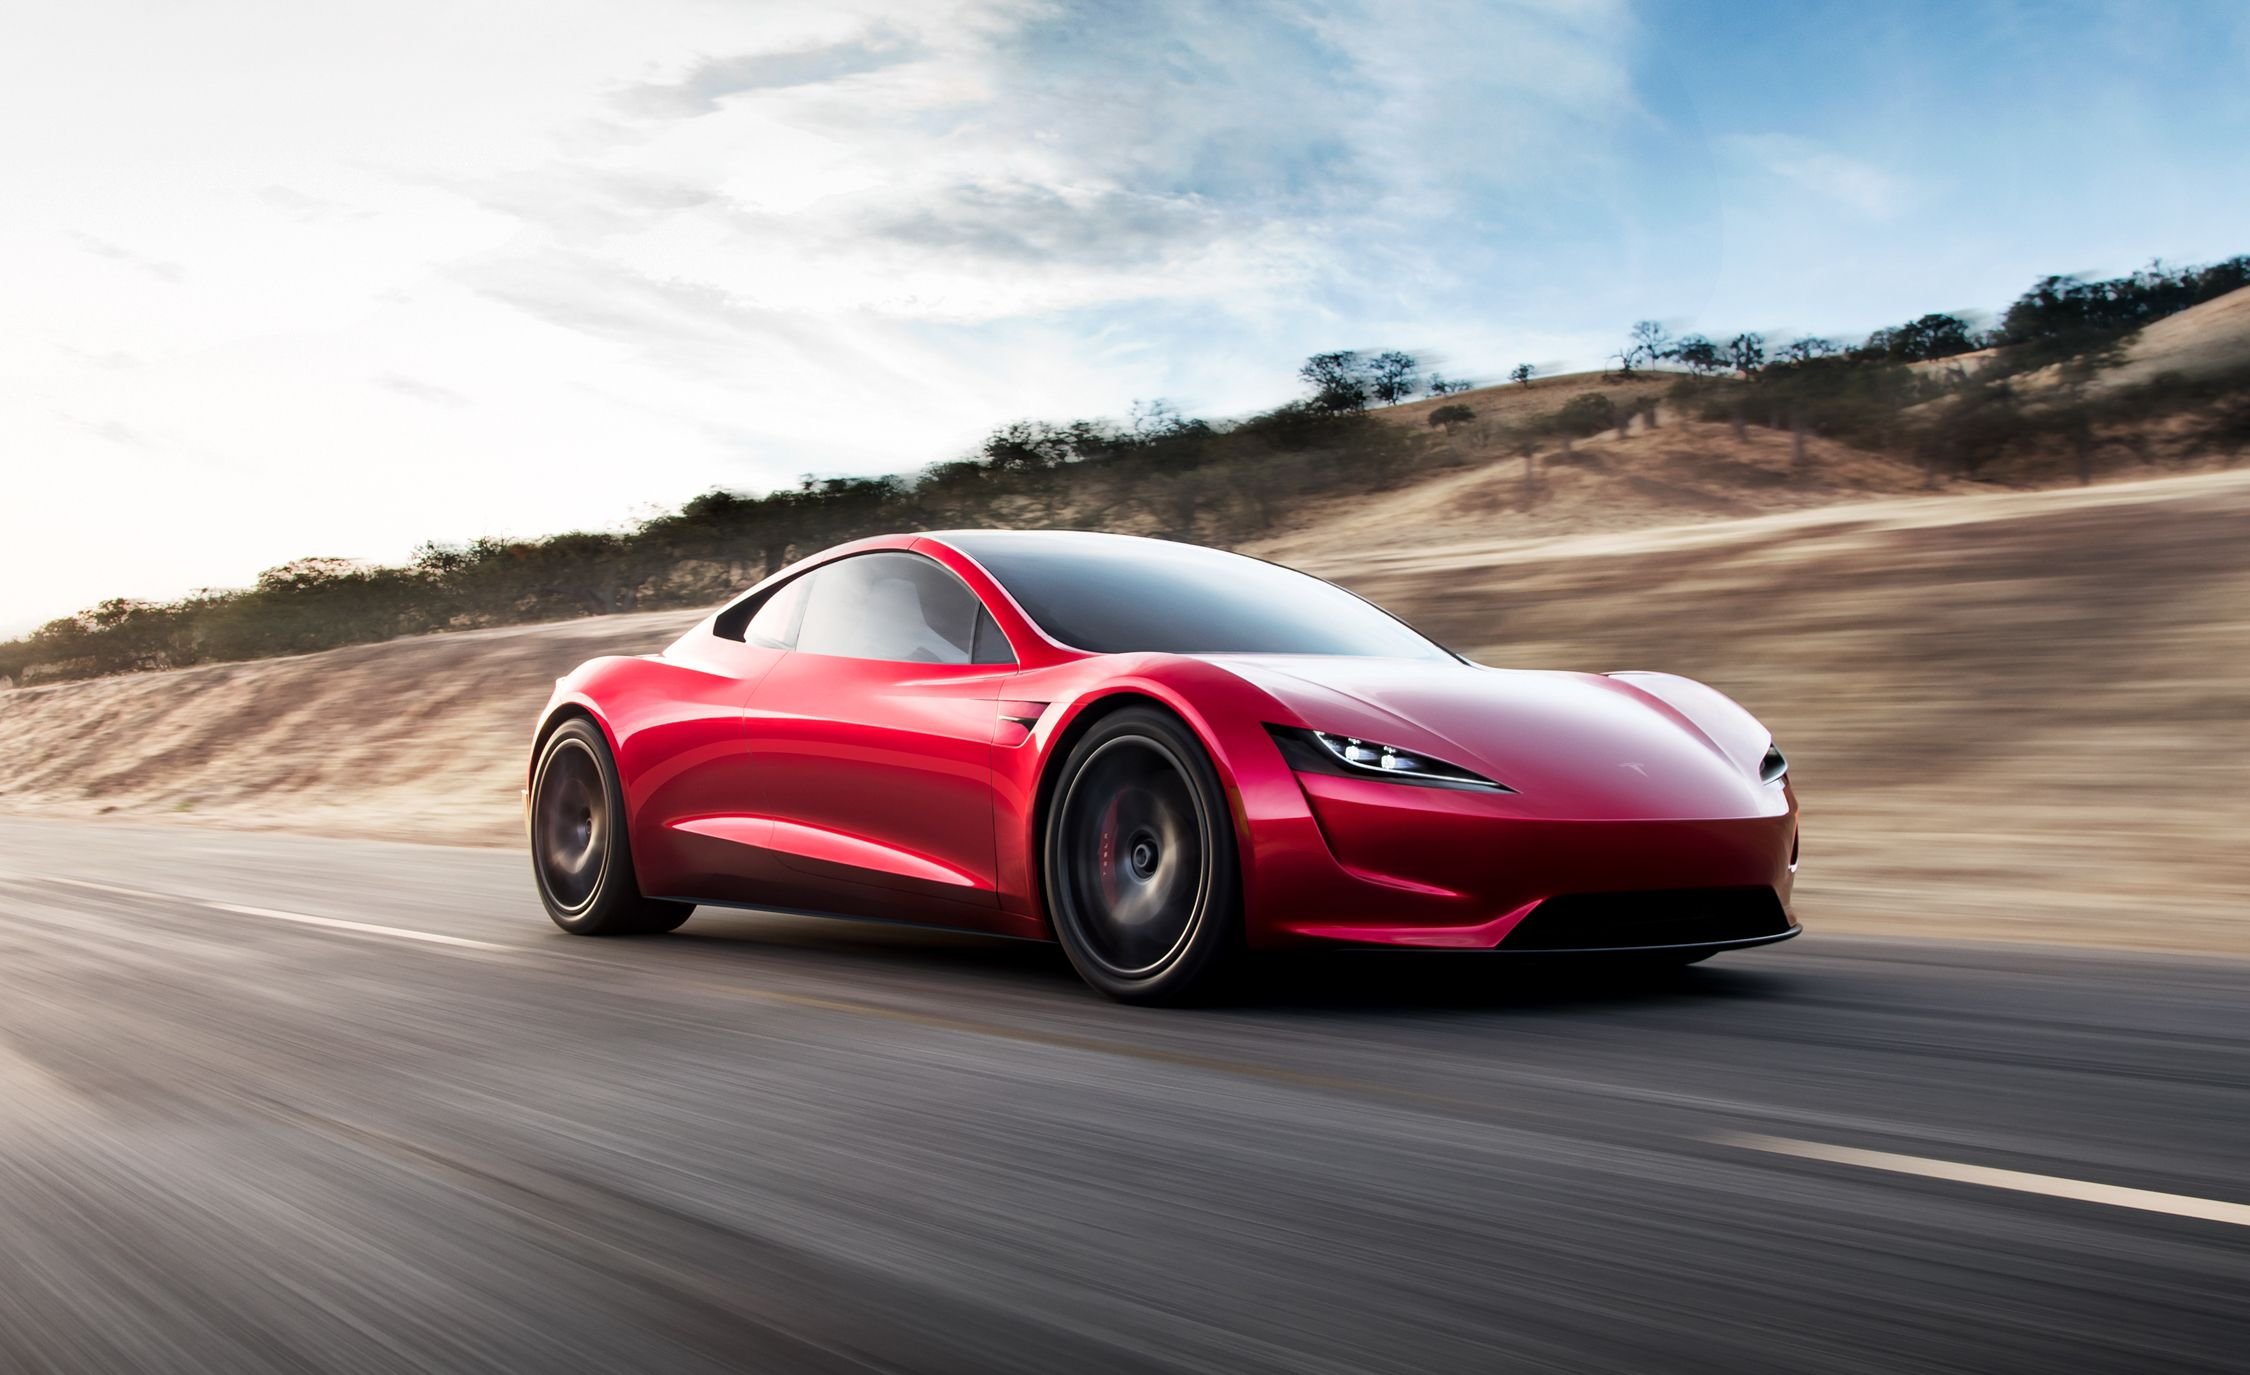  Livrările de vehicule ale Tesla au depăşit aşteptările în 2020, dar au ratat uşor obiectivul anual